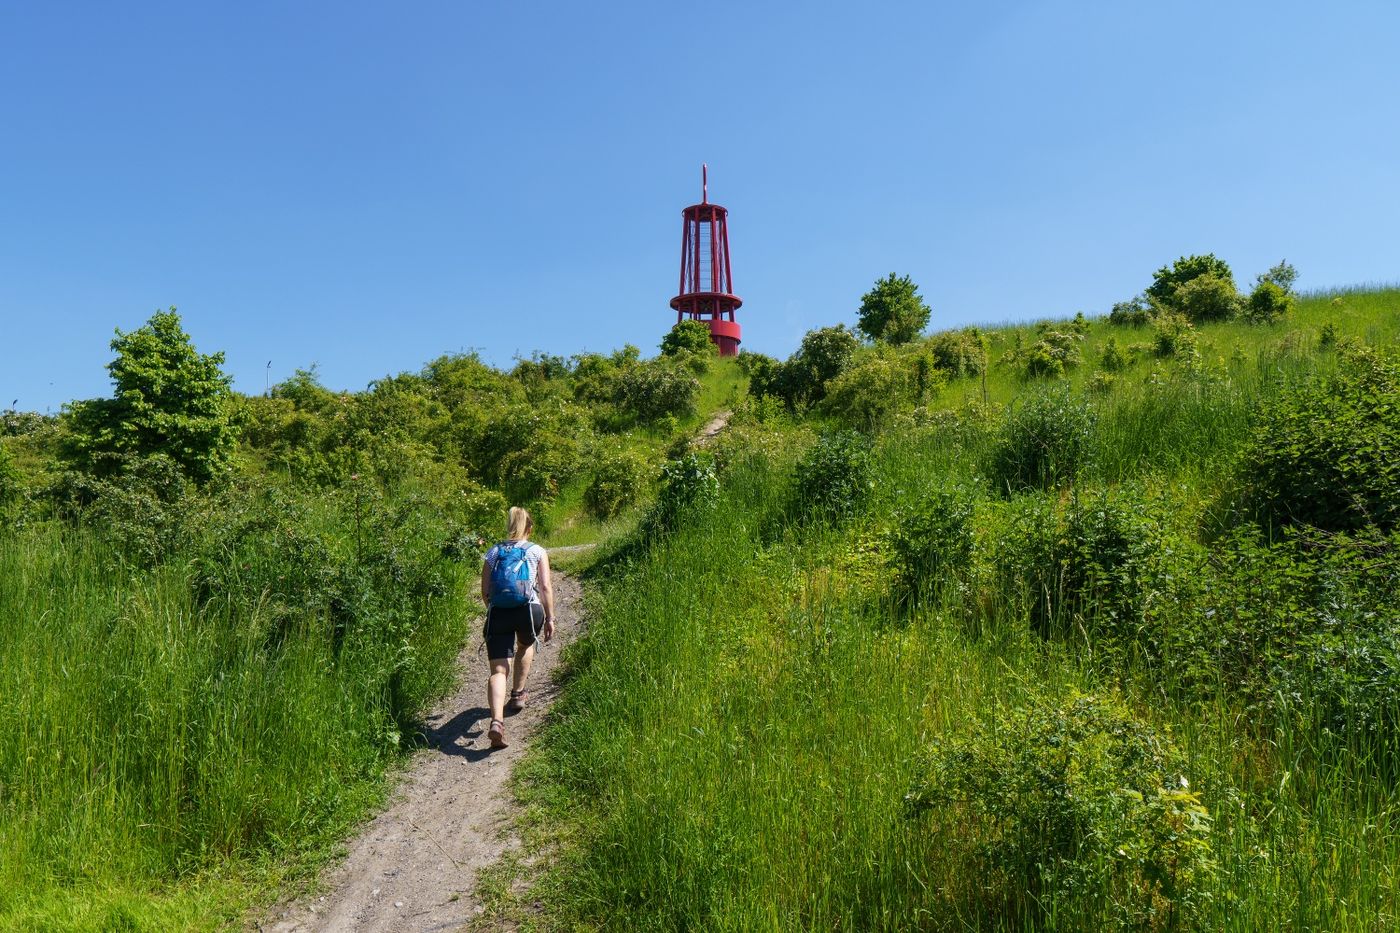 Wälder, Seen und Haldenerlebnis - eine naturnahe Runde durch den Duisburger Nordwesten